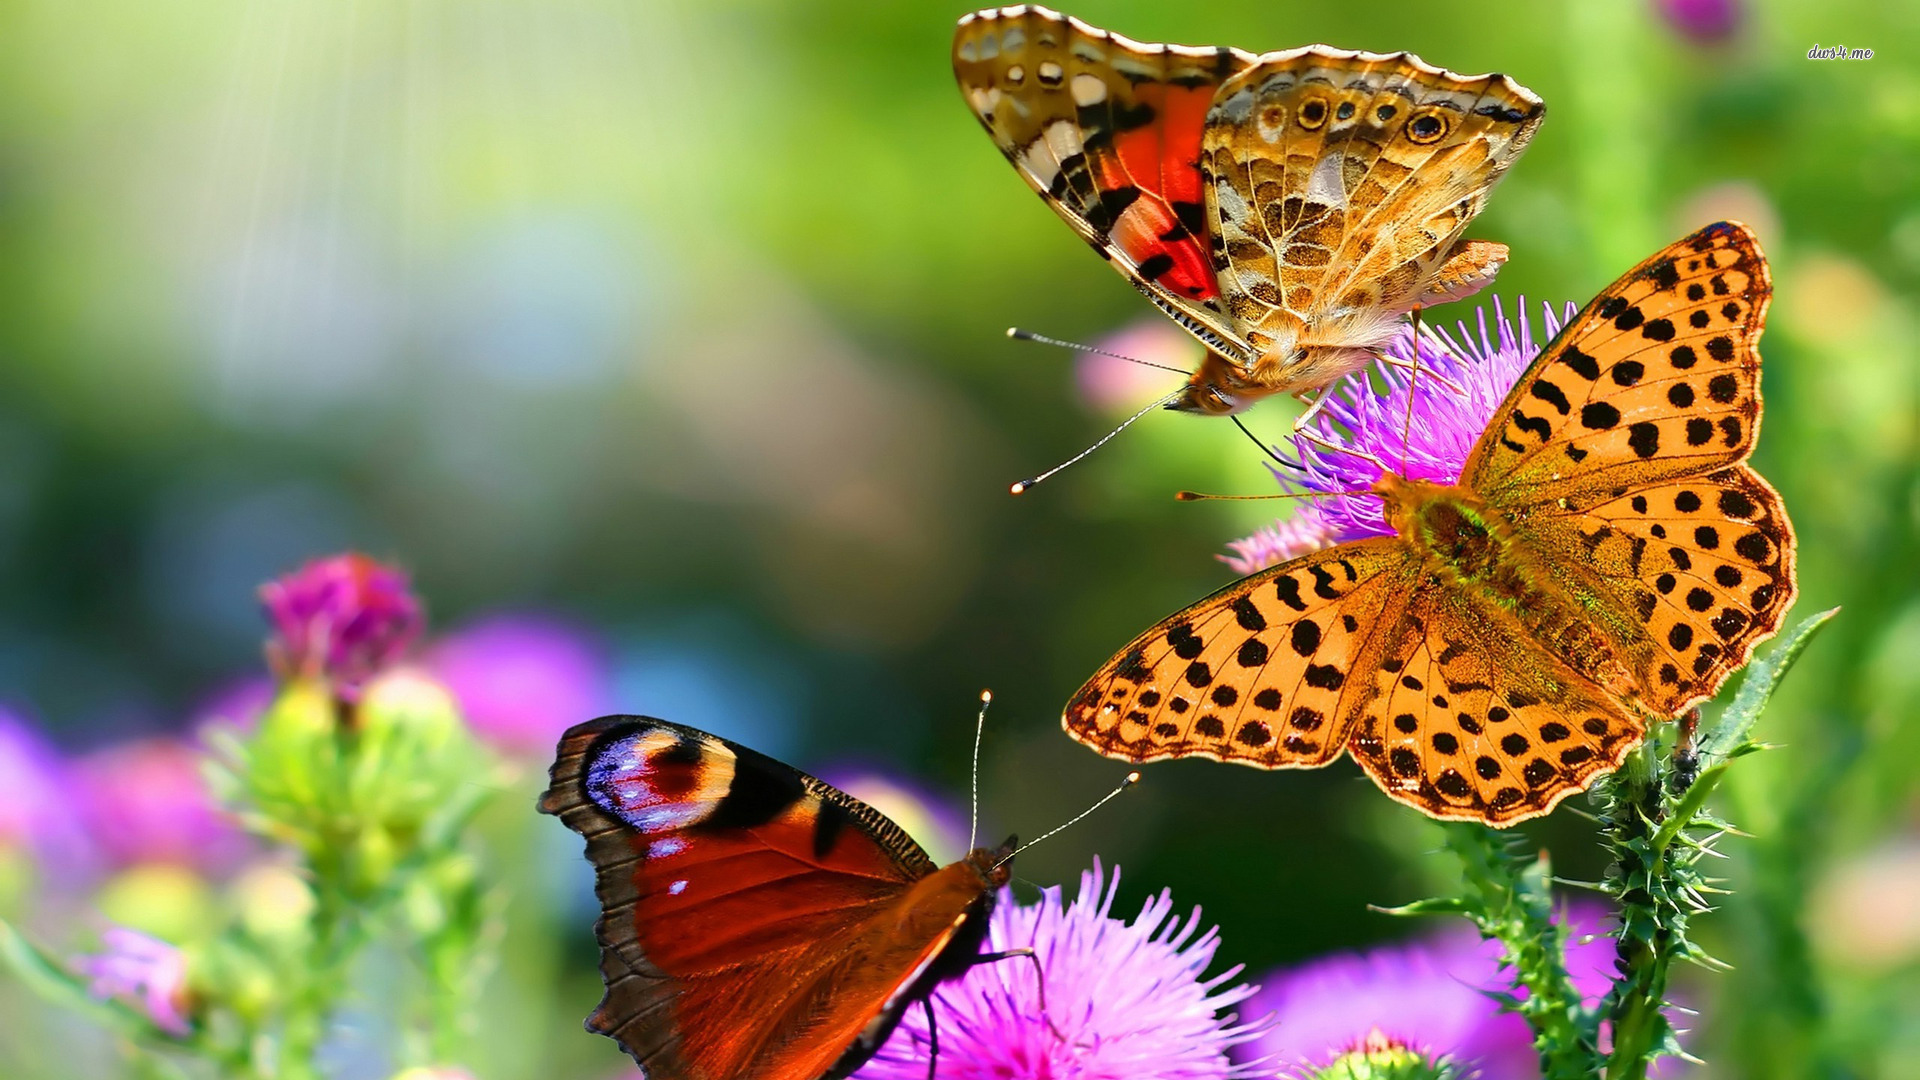 fond d'écran papillon gratuit,papillons et papillons,papillon,sous genre de cynthia,insecte,invertébré